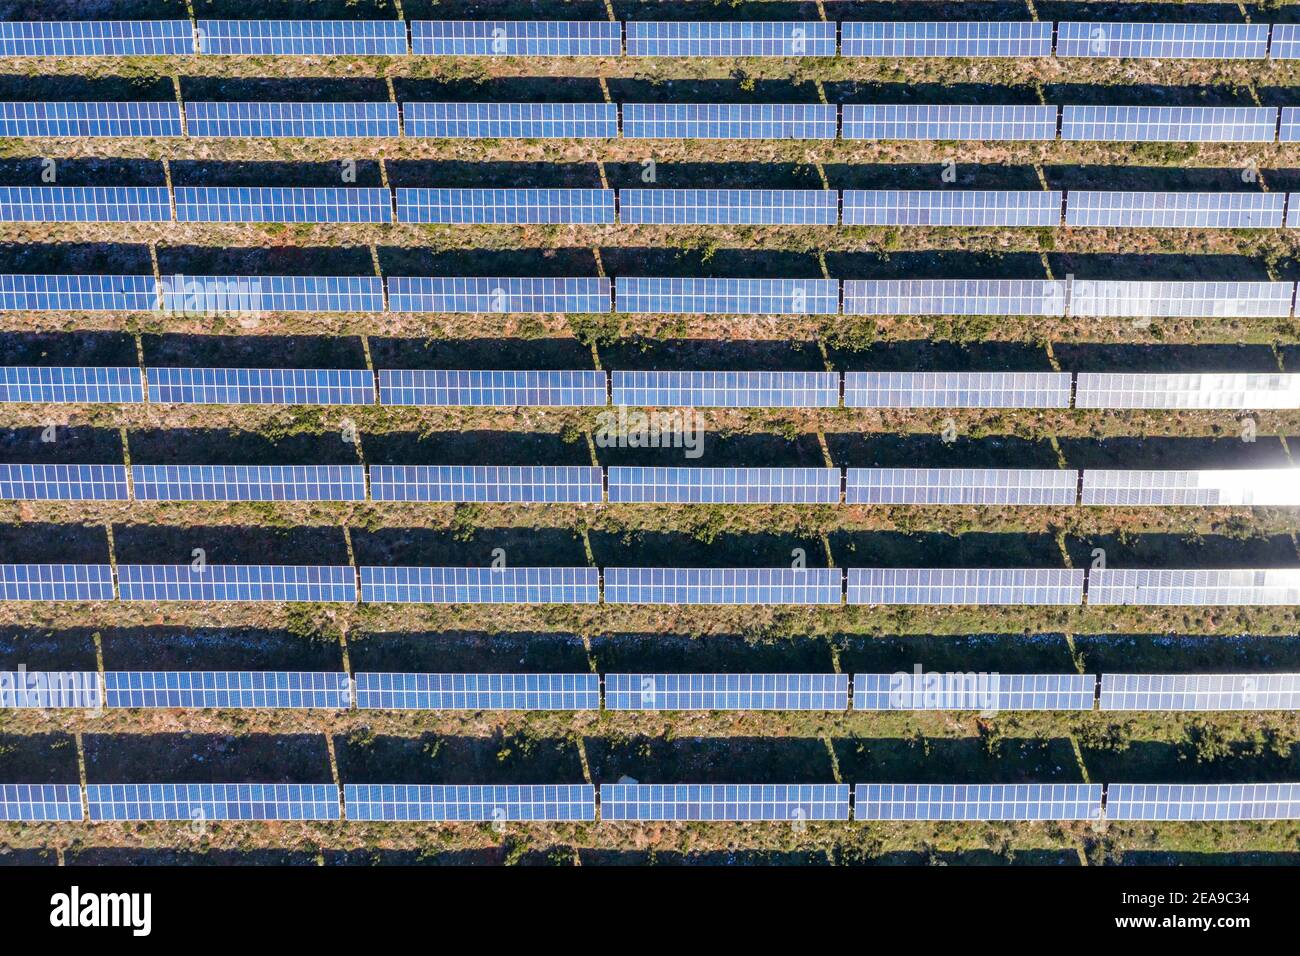 Énergie solaire, panneaux de fond, concept de production d'énergie verte alternative. Centrale électrique verte écologique renouvelable, vue de dessus de l'antenne de drone. Banque D'Images